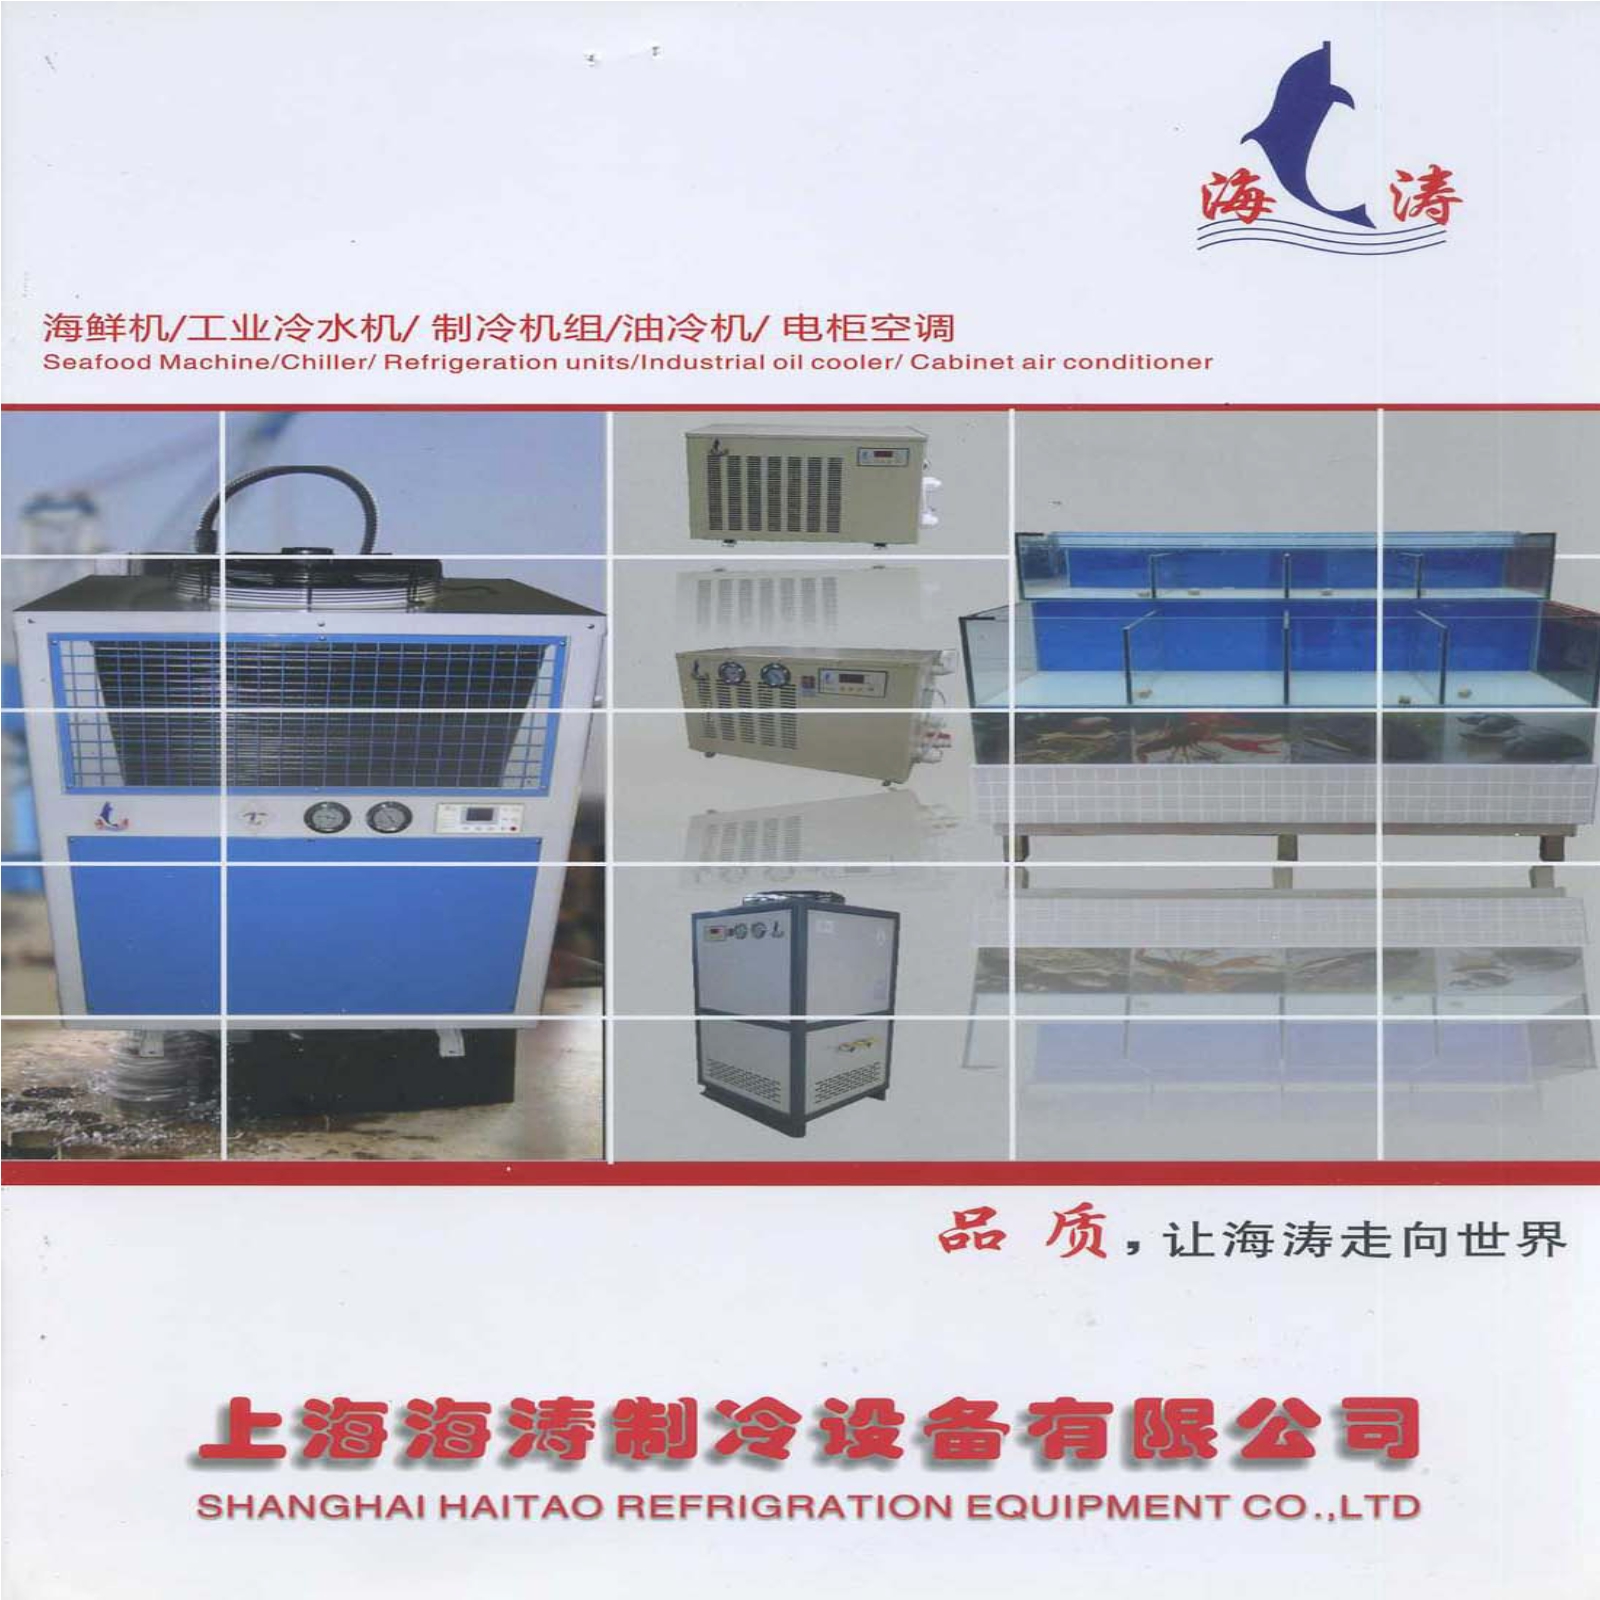 海鲜机/工业冷水机/制冷机组/油冷机/电柜空调